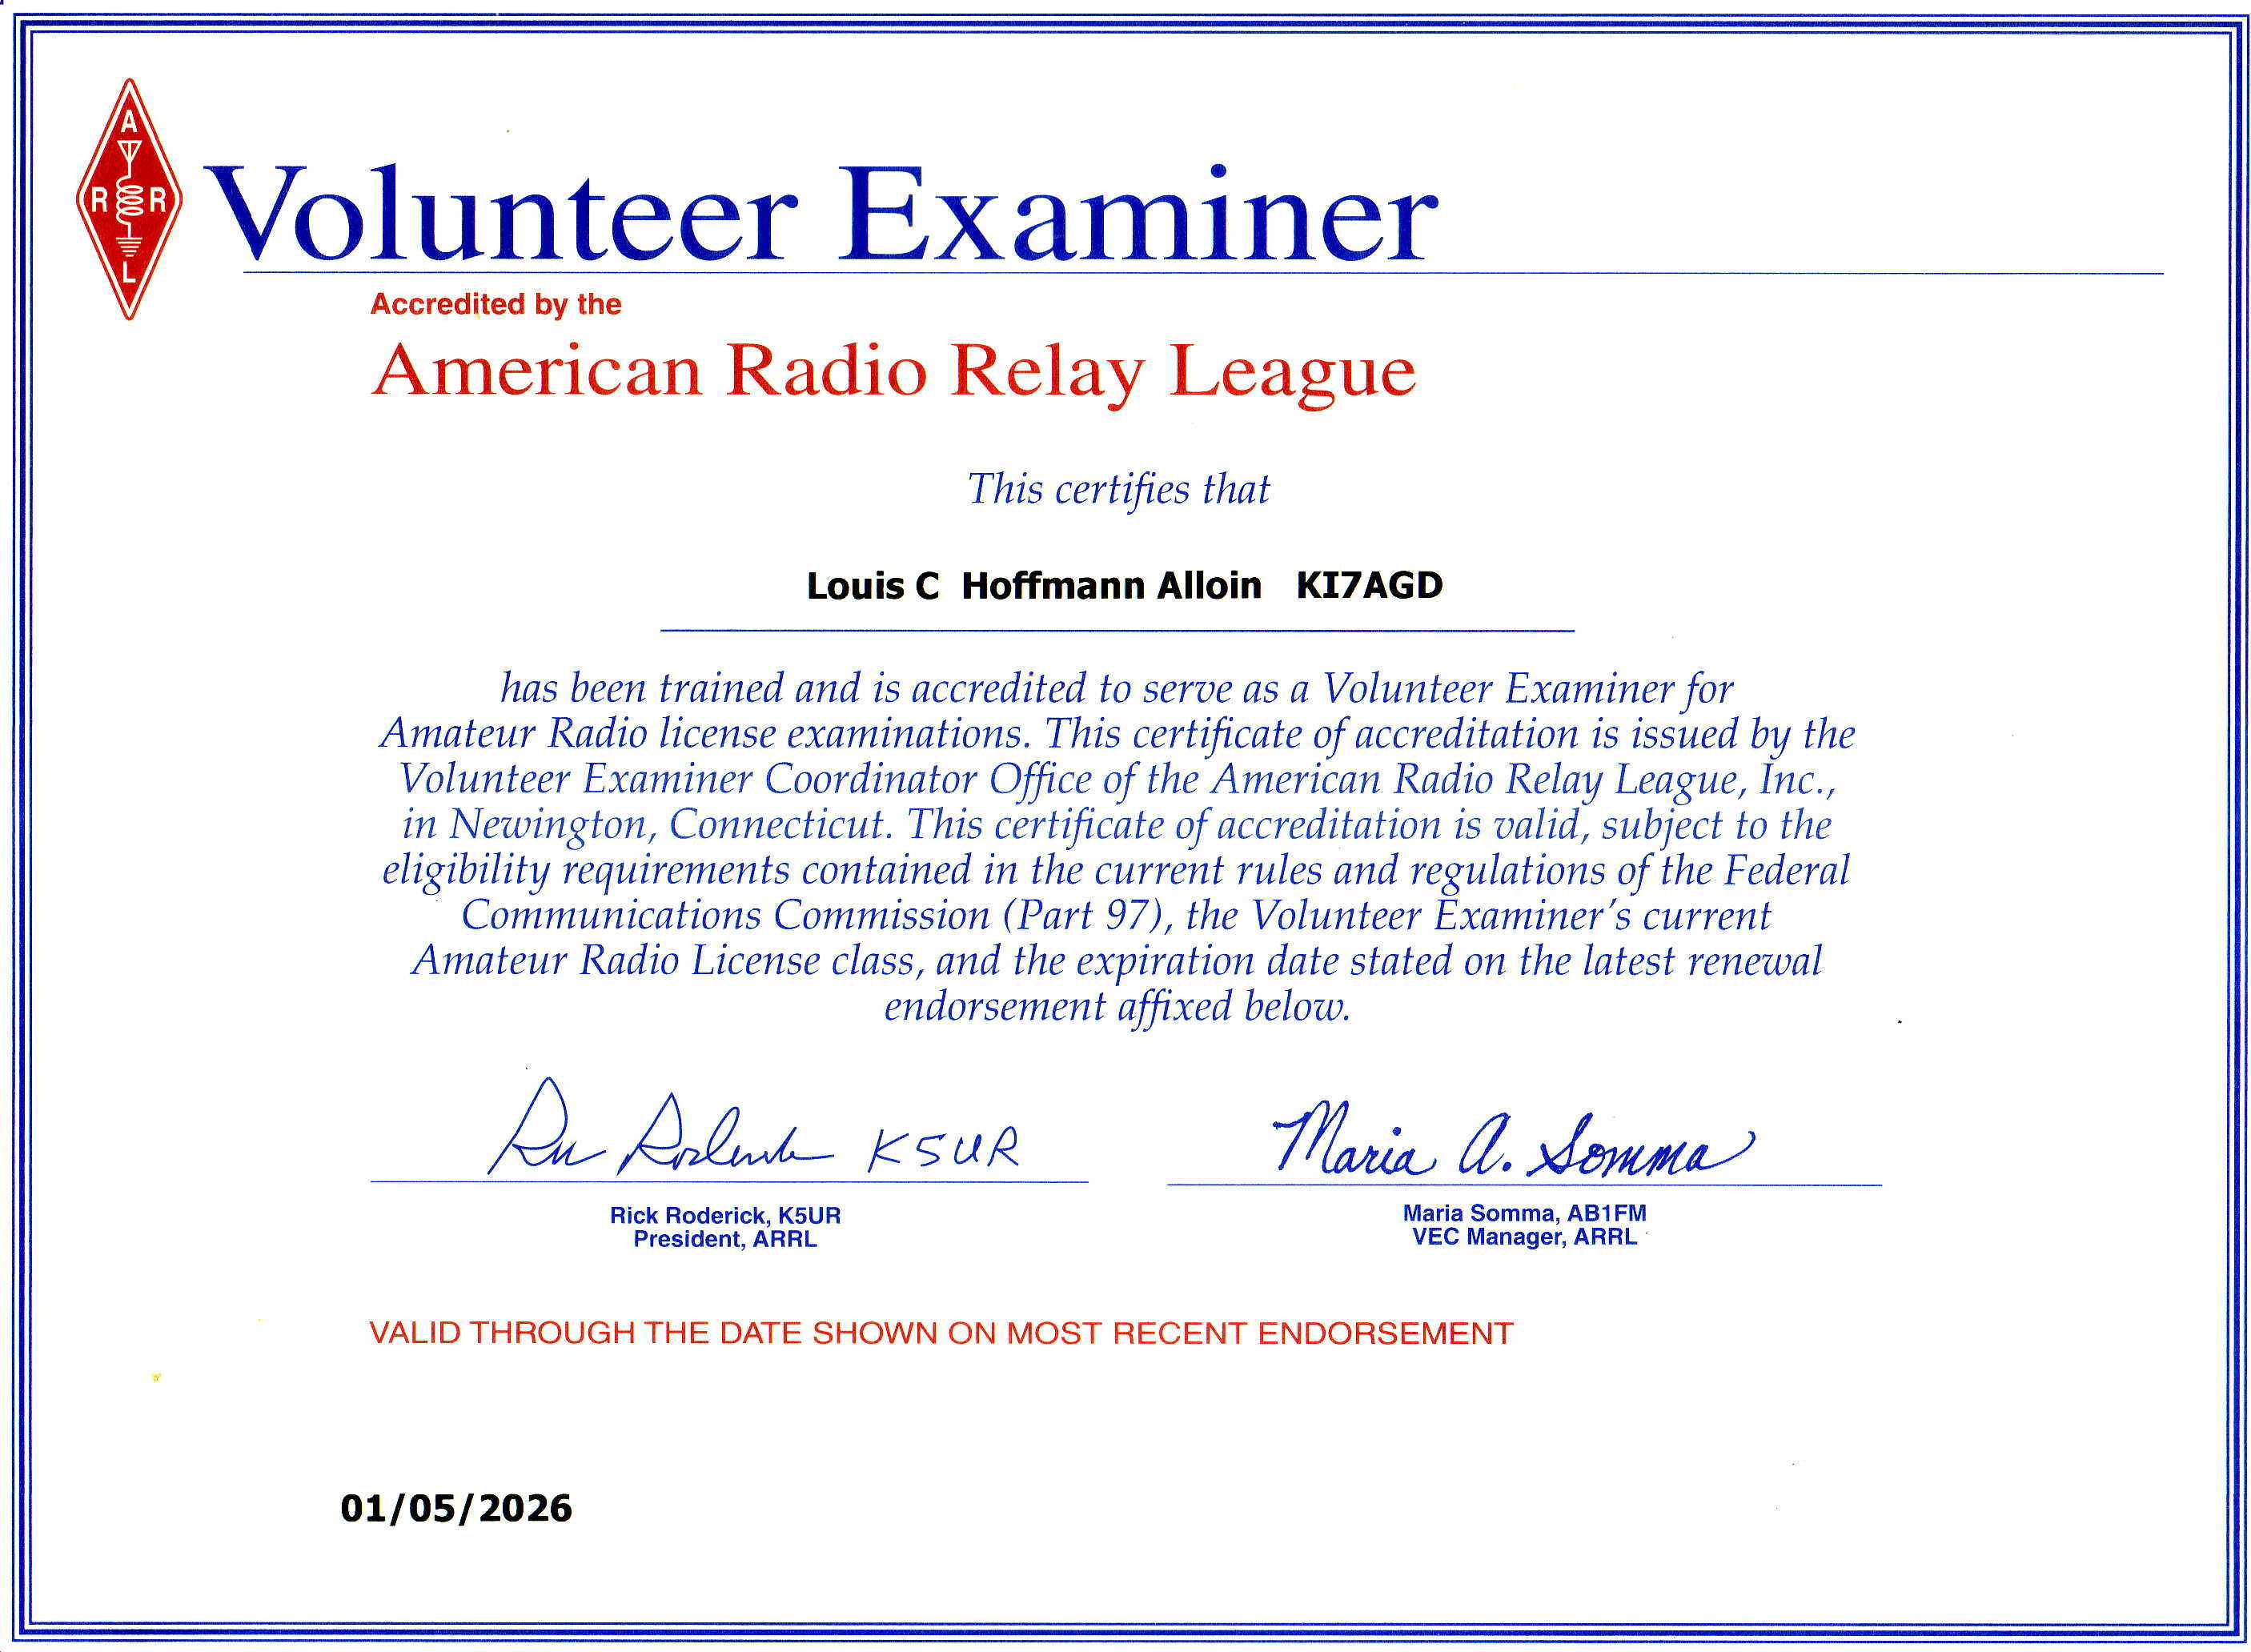 Volunteer Examiner Program